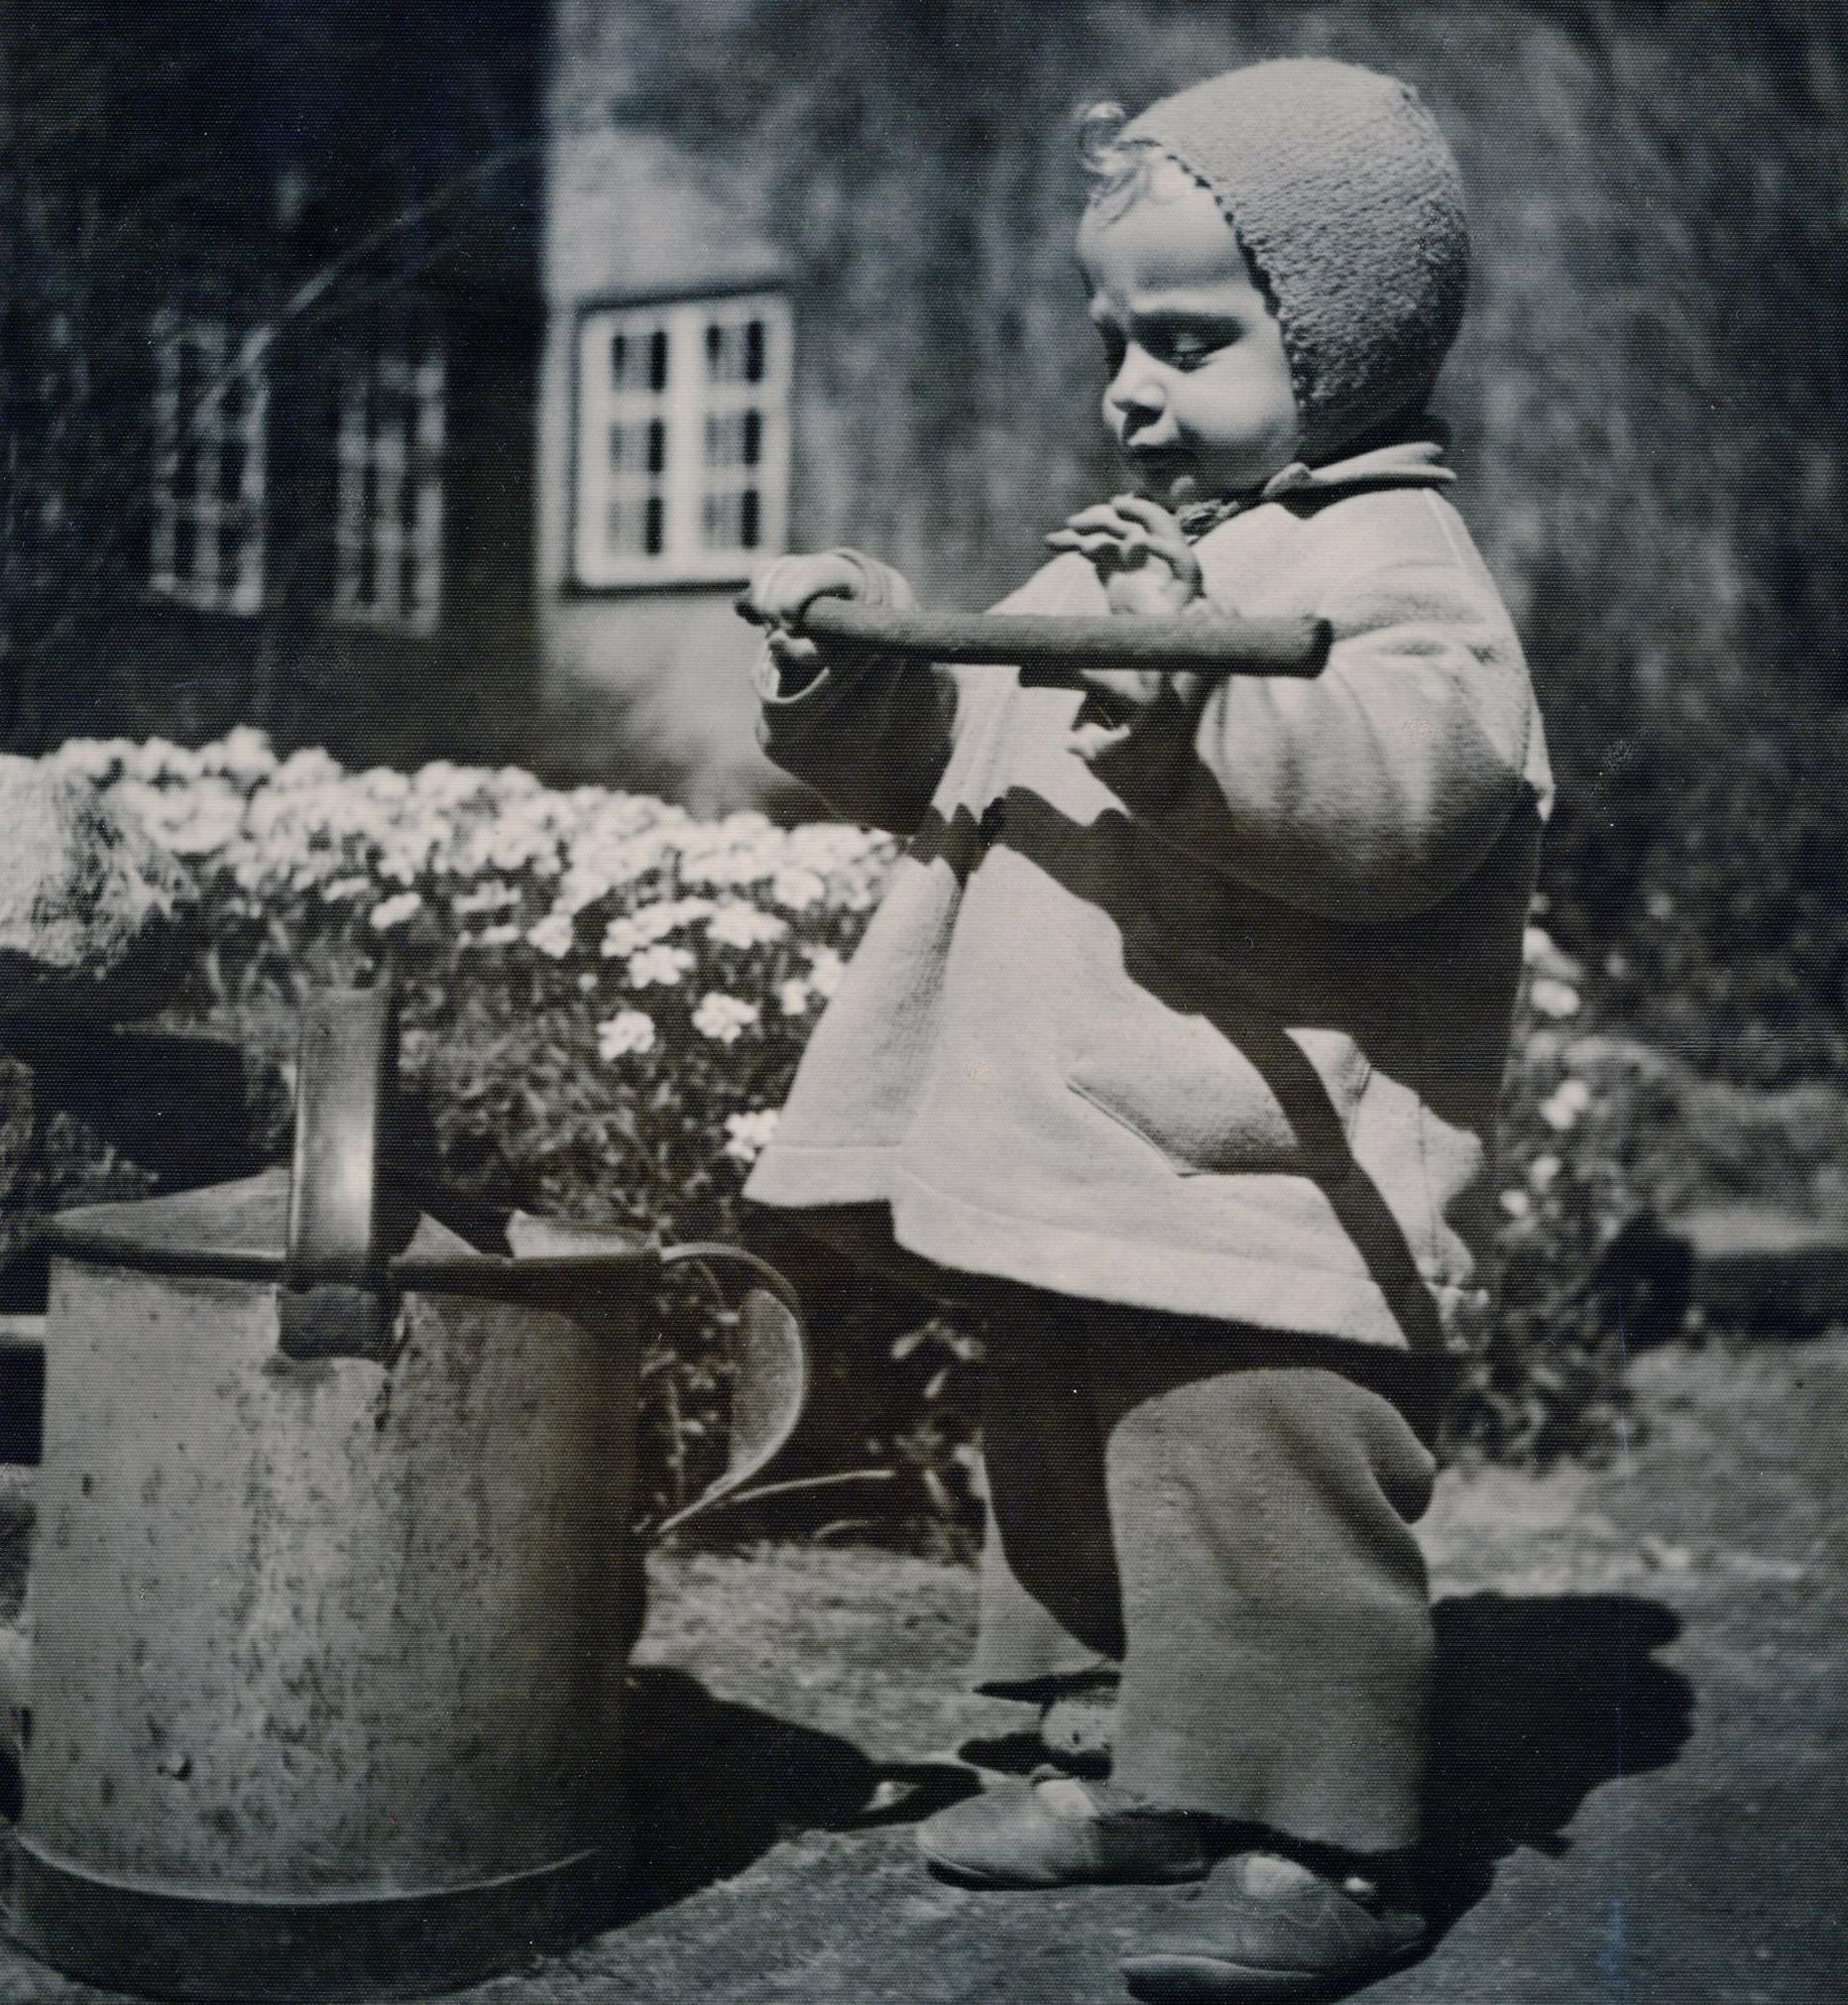 Päevapiltniku Jaan Rieti ja pere nelja naisfotograafi (tema tütarde Elma ja Hilja, naise Marie ja tolle õe Anna) keskseks modelliks kujunes 1944. aastal sündinud väike prints, Hilja Rieti poeg Kristjan-Henn.